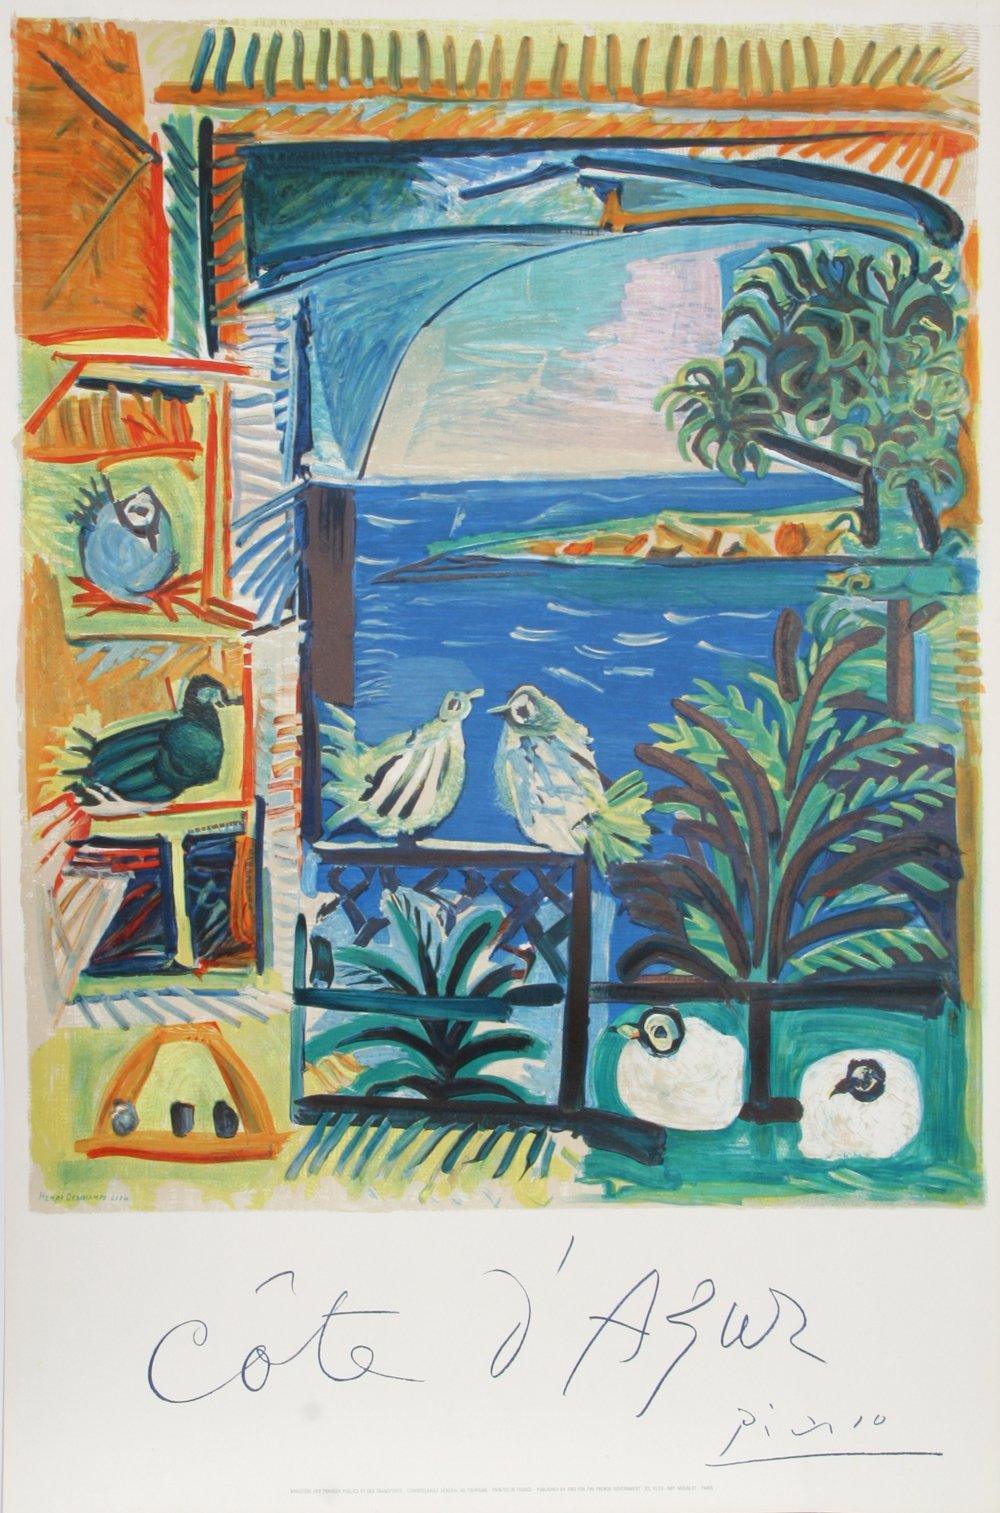 Cote d'Azur Lithograph | Pablo Picasso,{{product.type}}